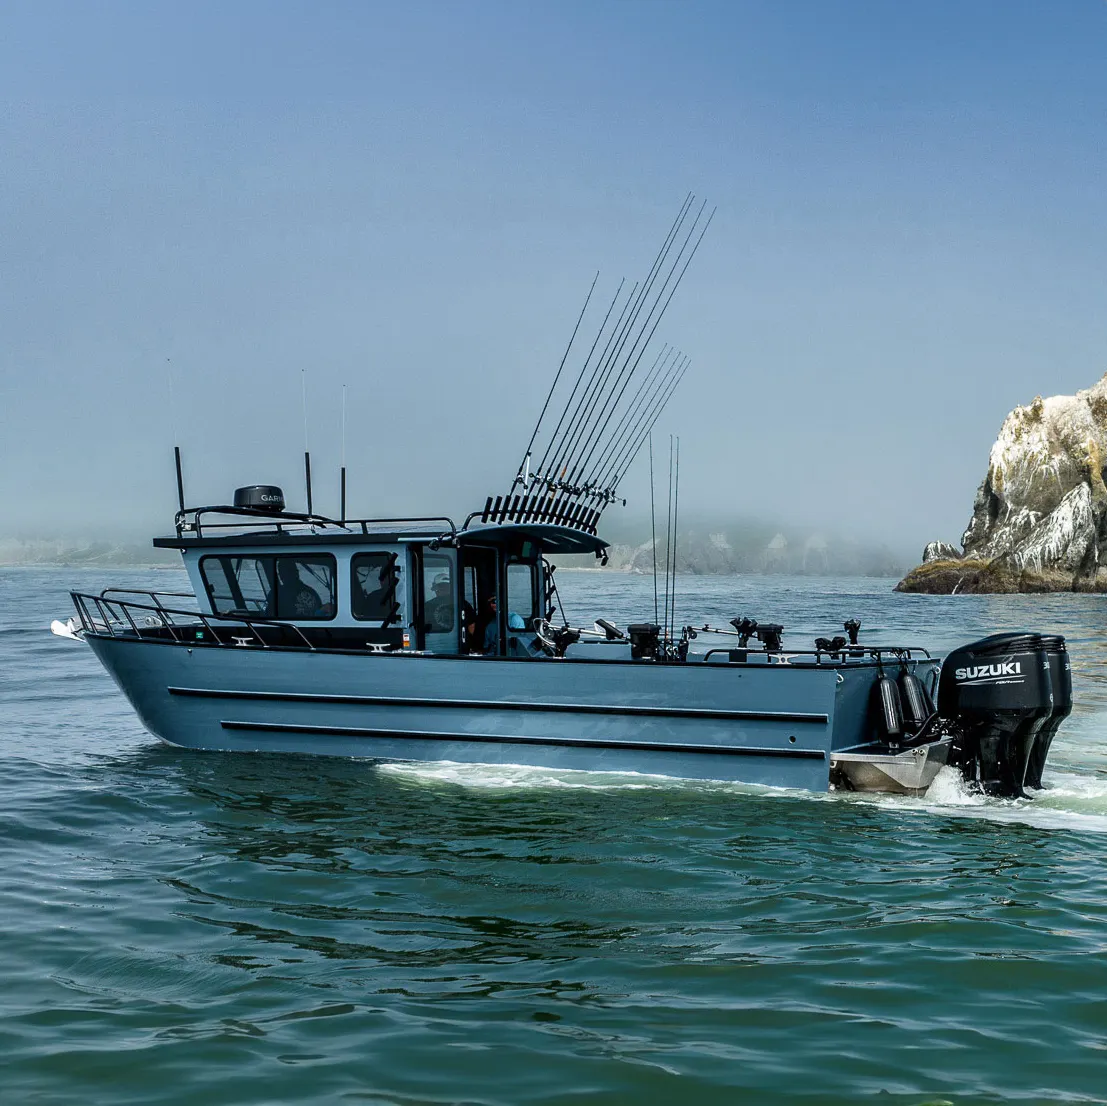 Bateau de pêche en cabine en aluminium personnalisable de haute qualité longueur 8.3m avec moteur hors-bord pour les loisirs nautiques et la pêche